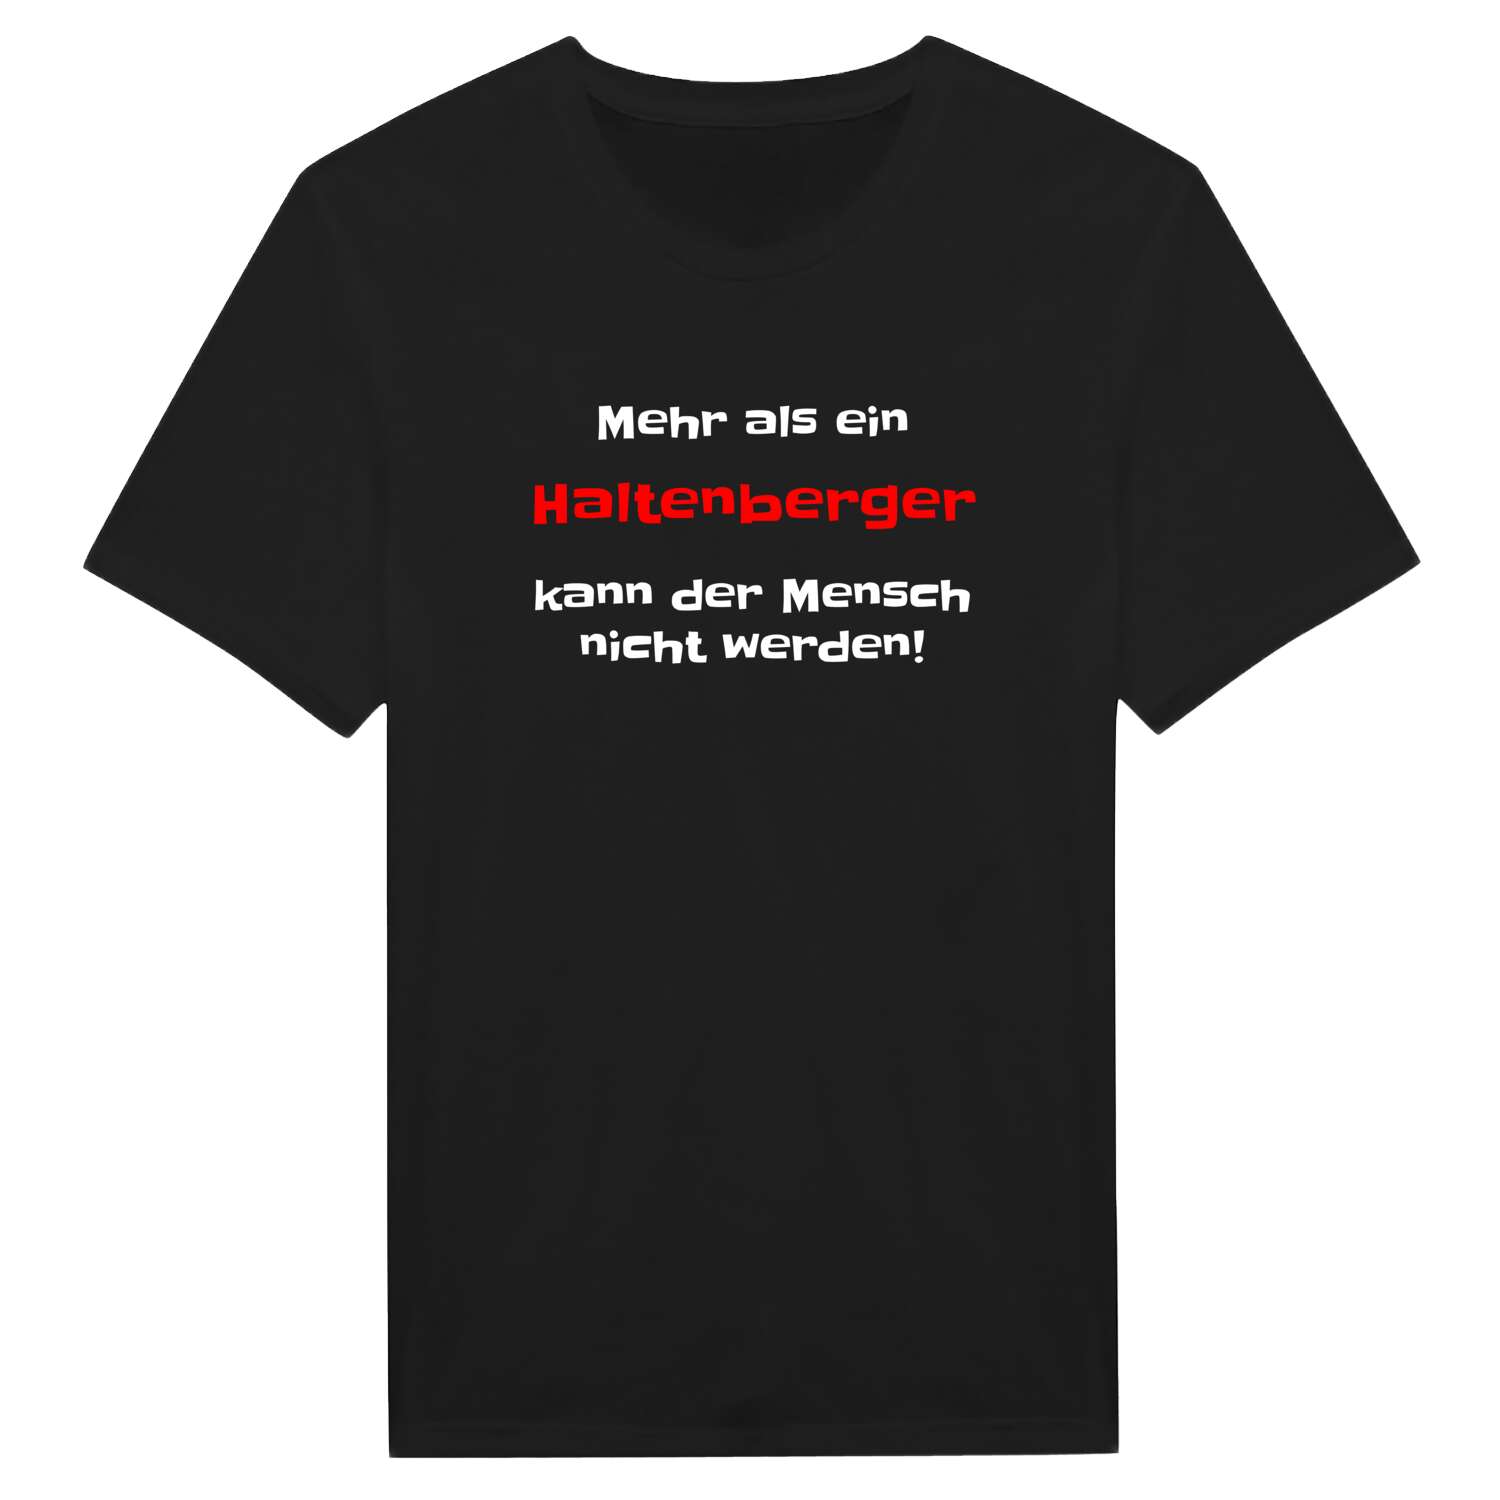 Haltenberg T-Shirt »Mehr als ein«